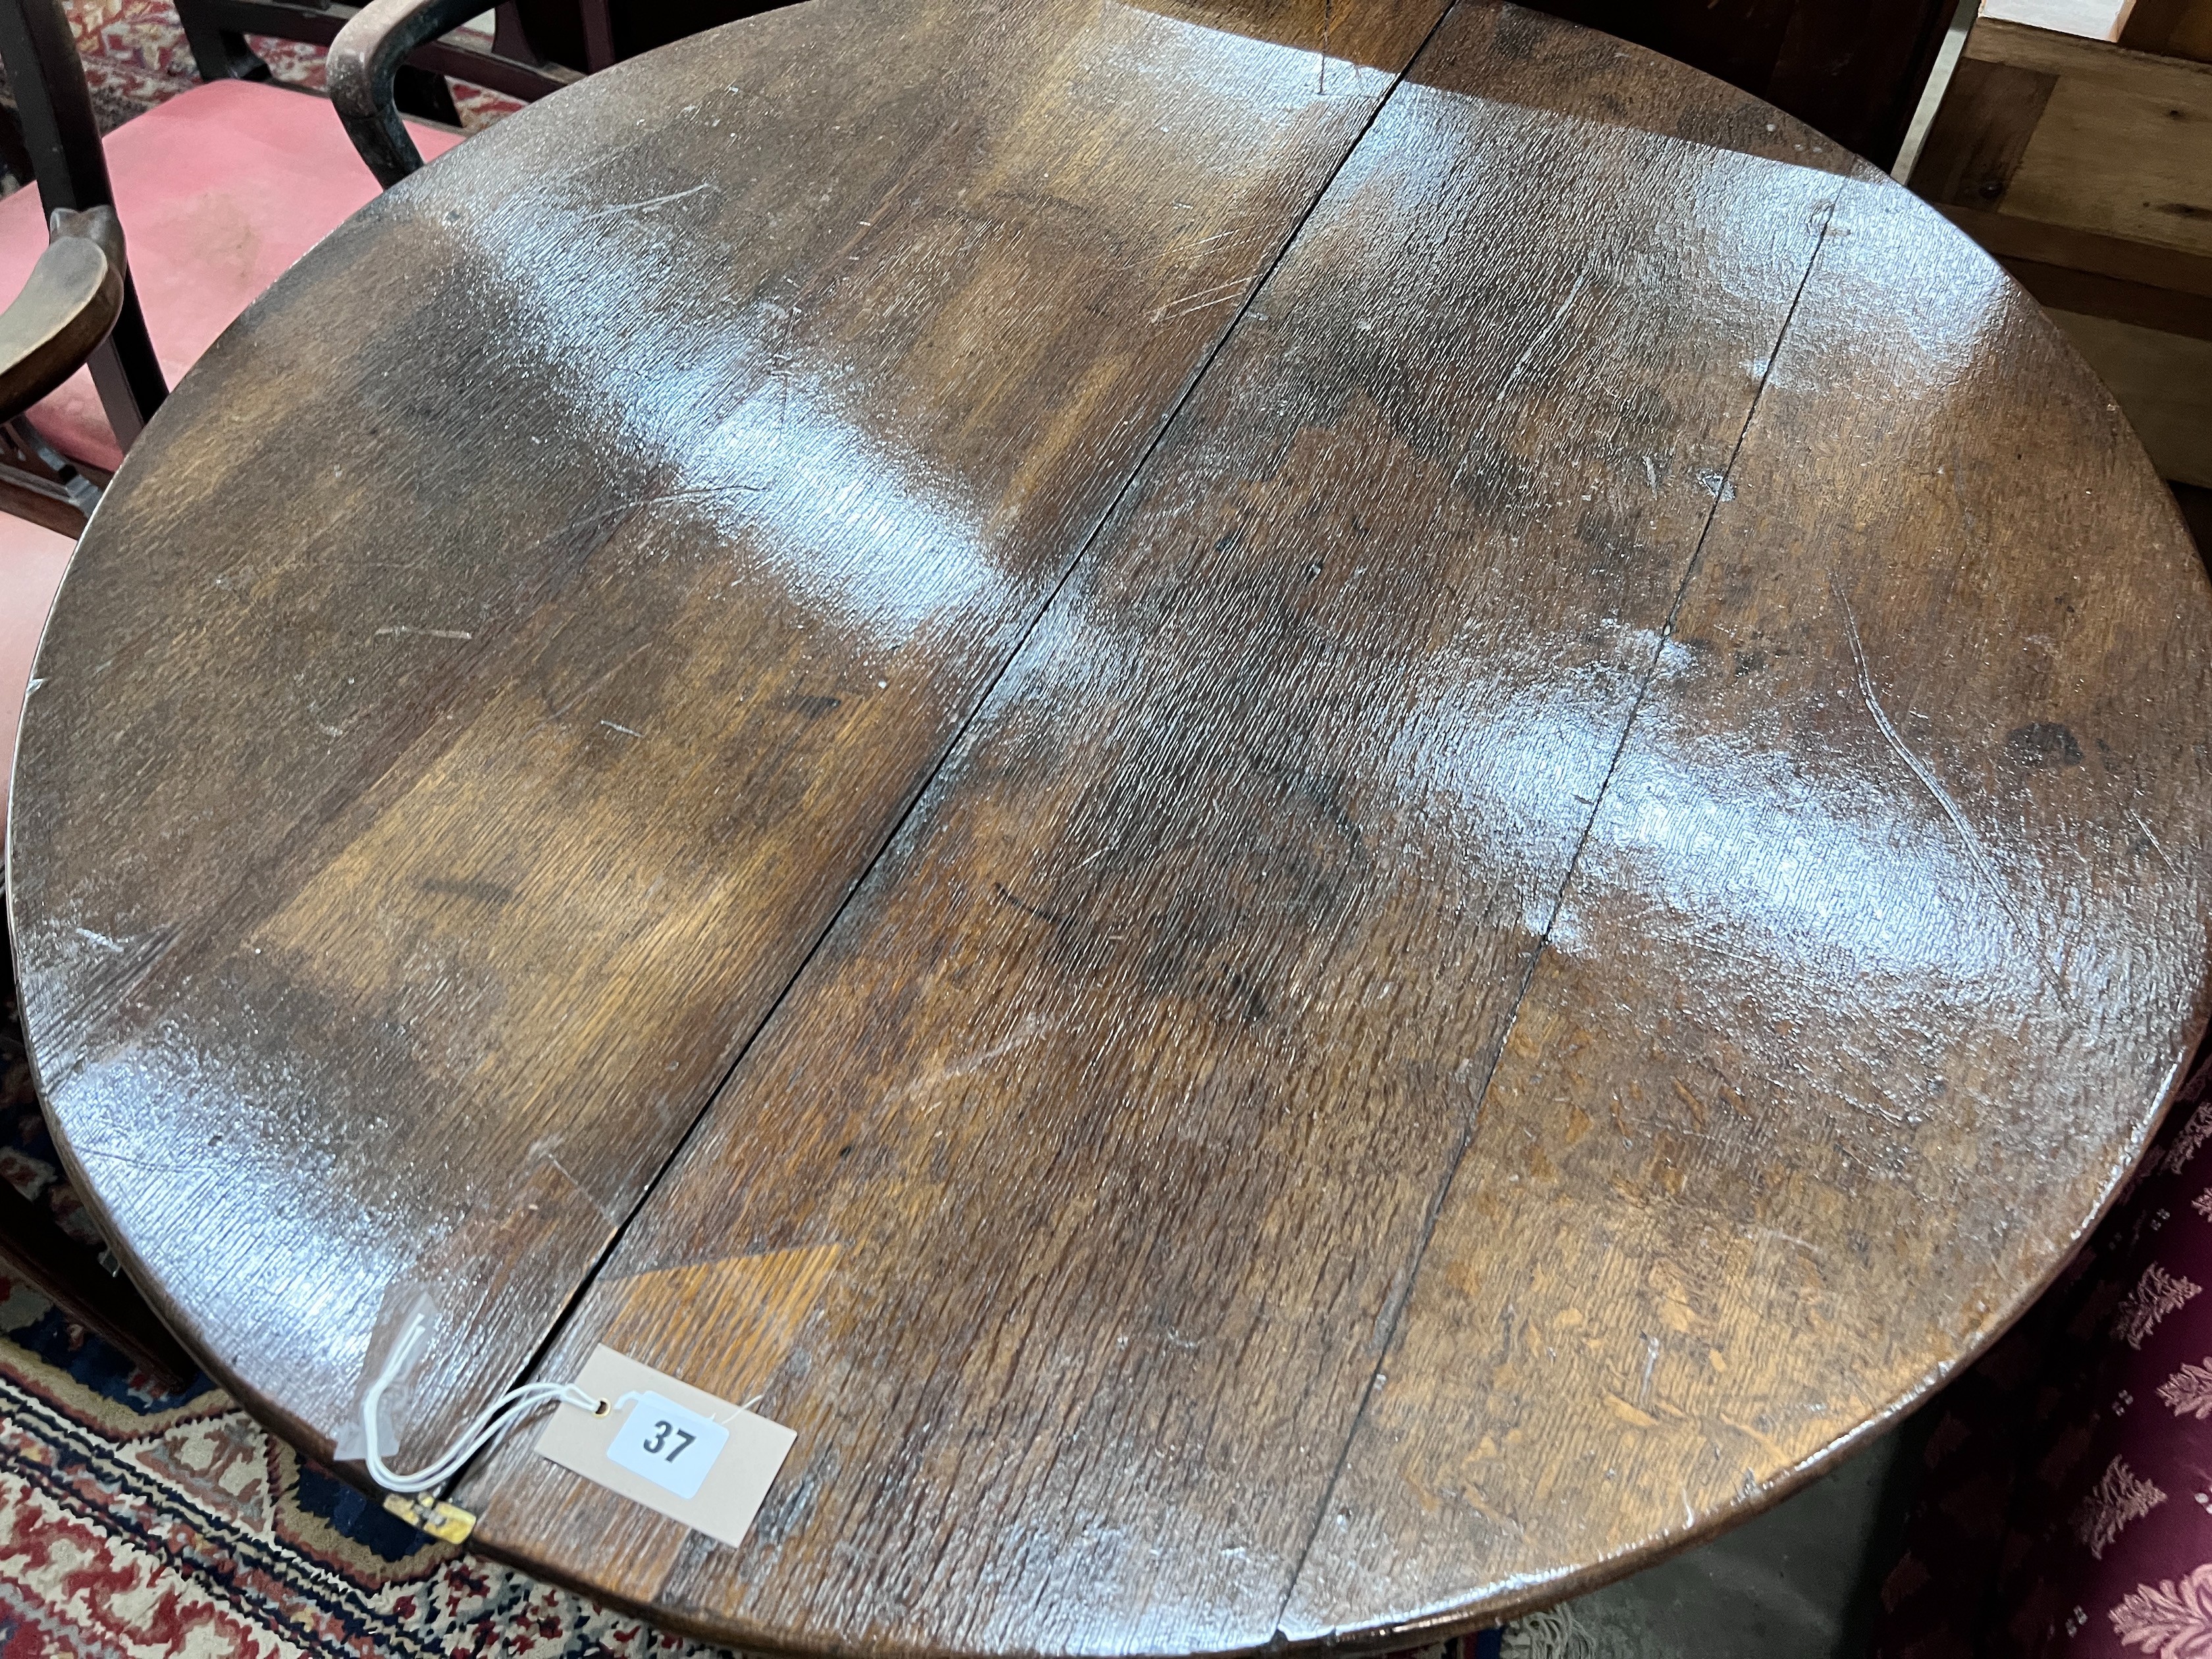 A late 17th century oak D shape folding tea table, diameter 94cm, height 70cm *Please note the sale commences at 9am.